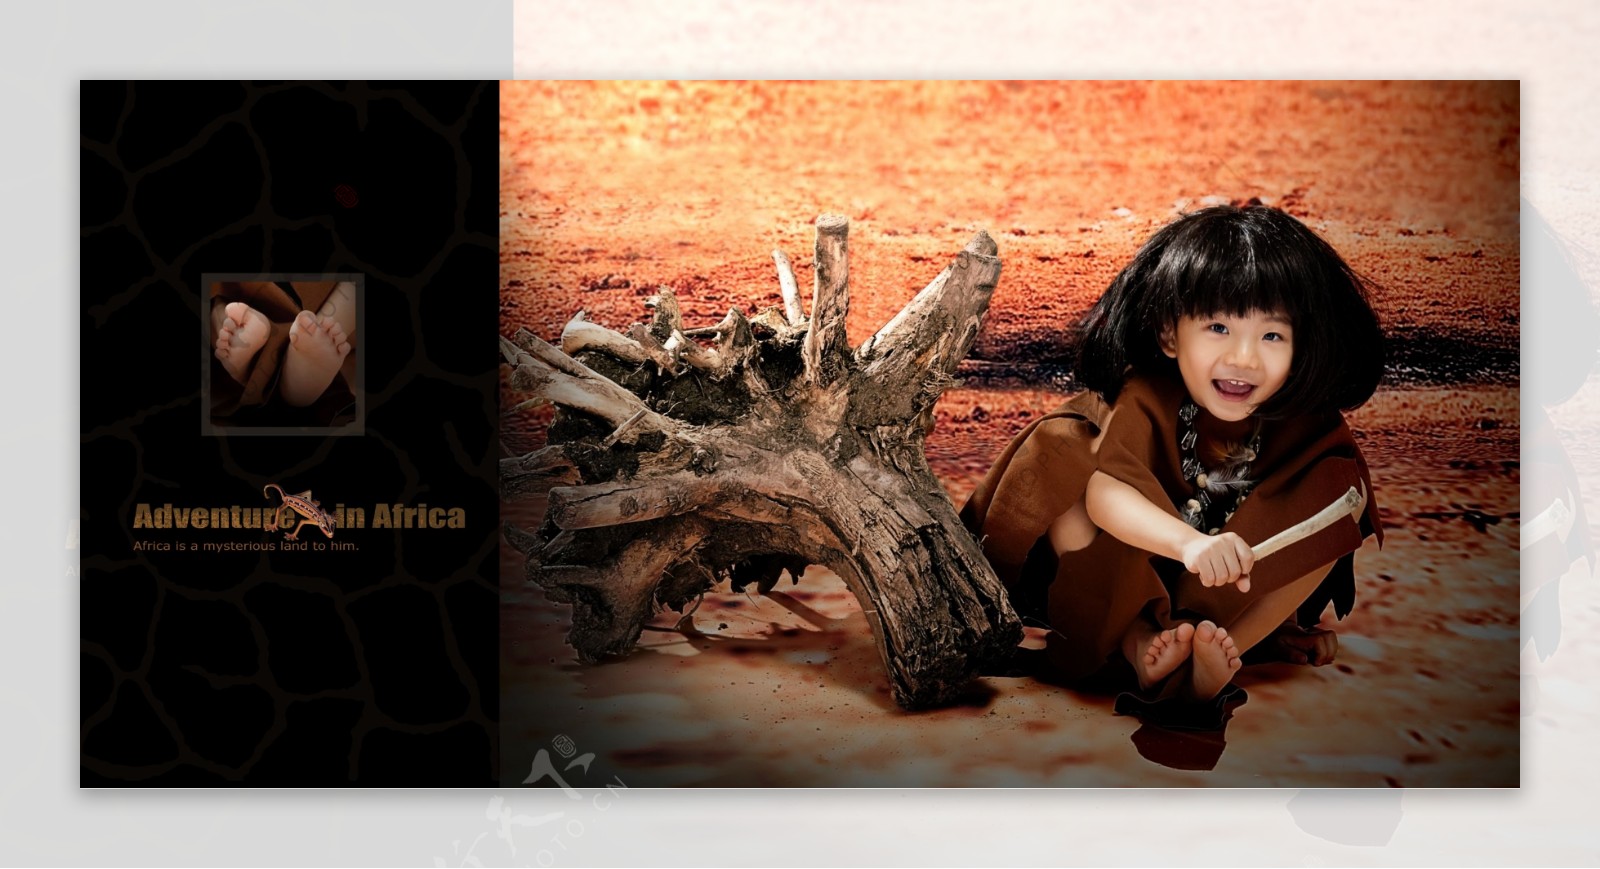 儿童主题样片非洲漫步图片